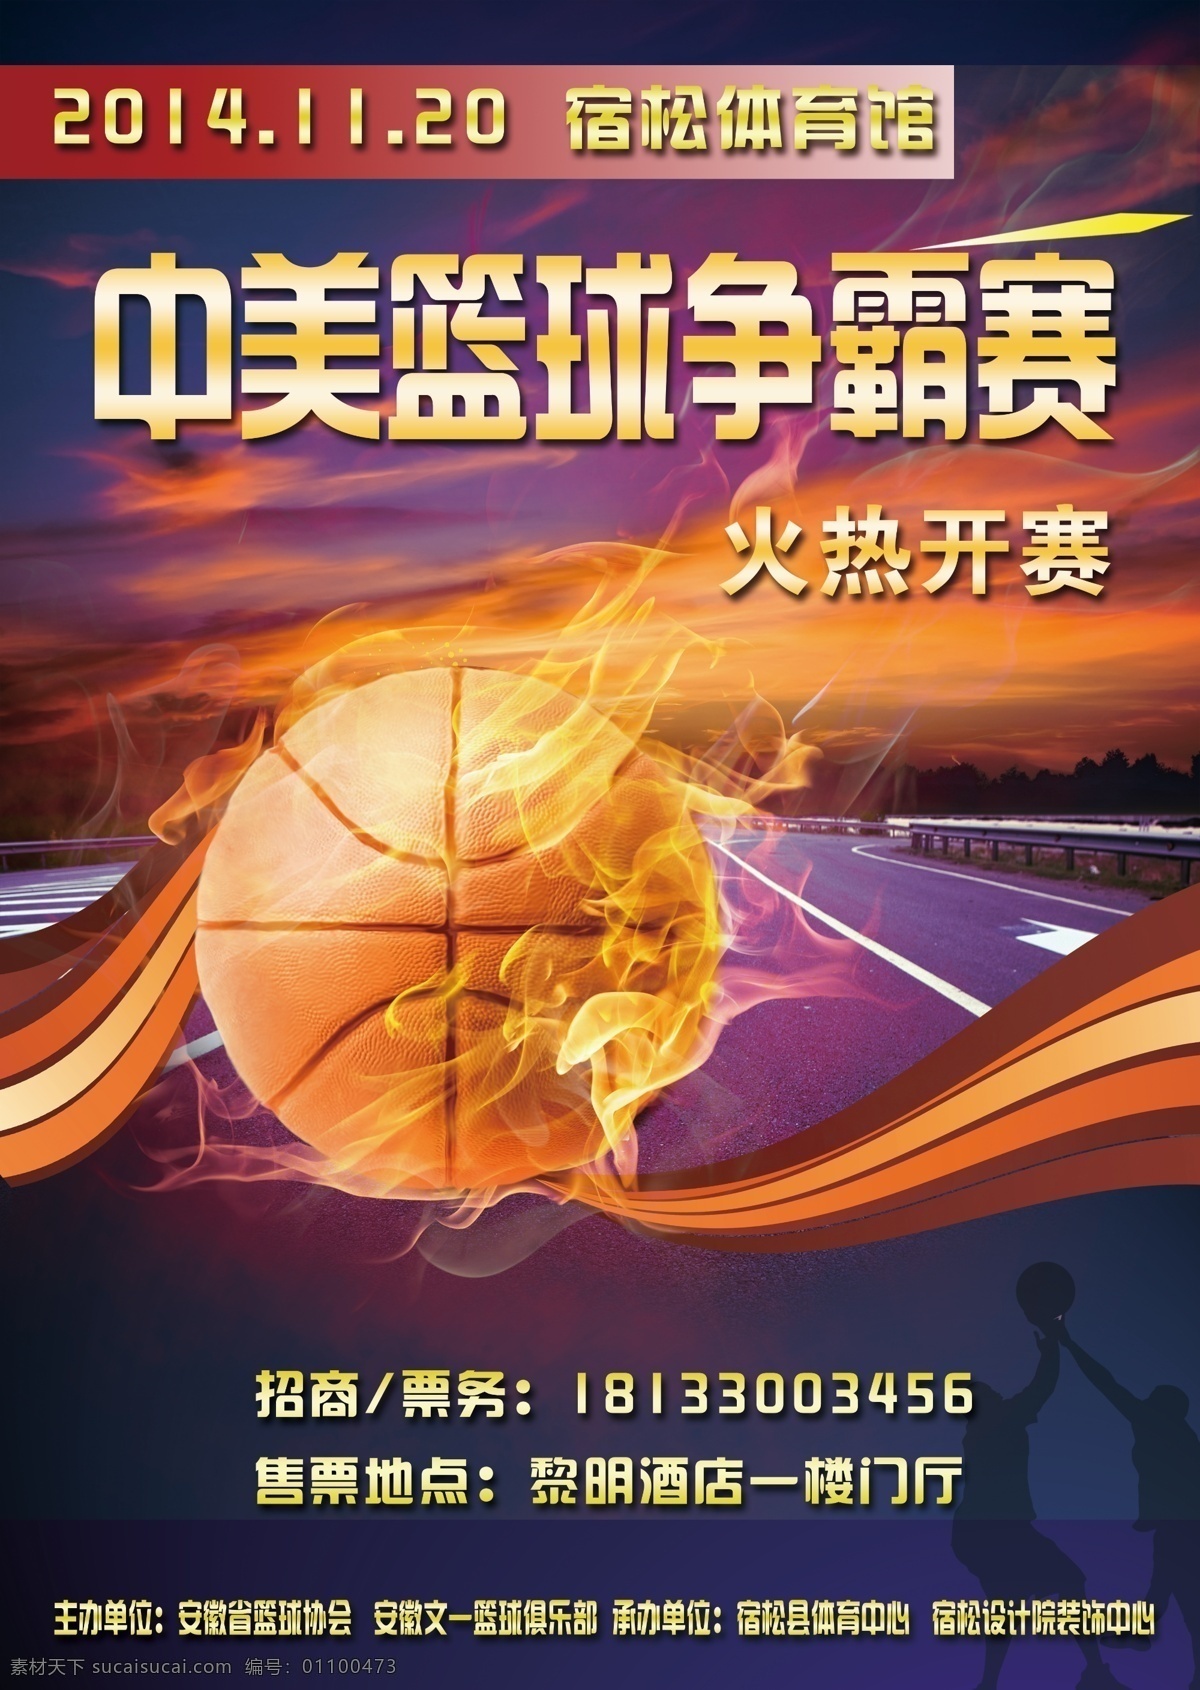 海报 篮球赛海报 篮球争霸赛 篮球比赛 篮球推广海报